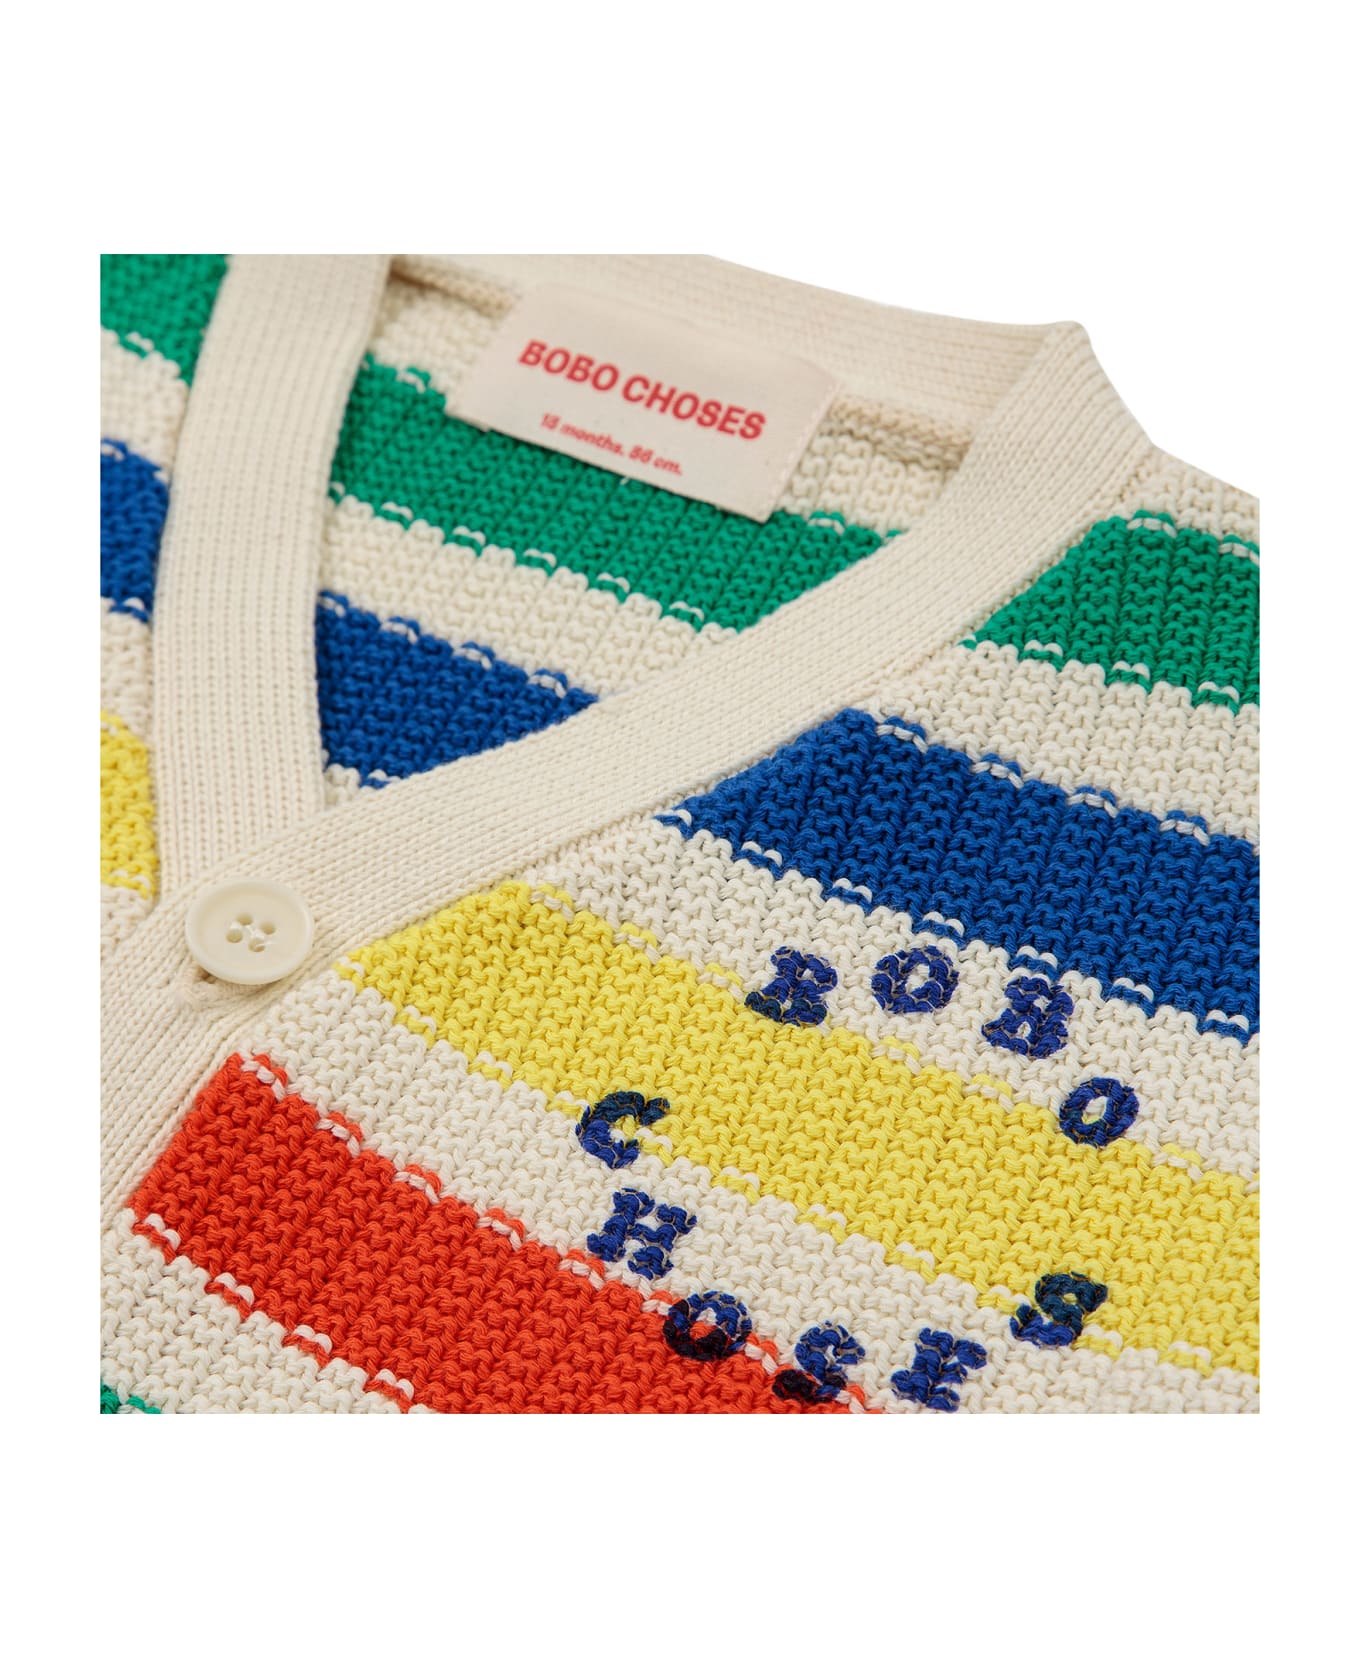 Bobo Choses Multicolor Cardigan For Babies - Multicolor